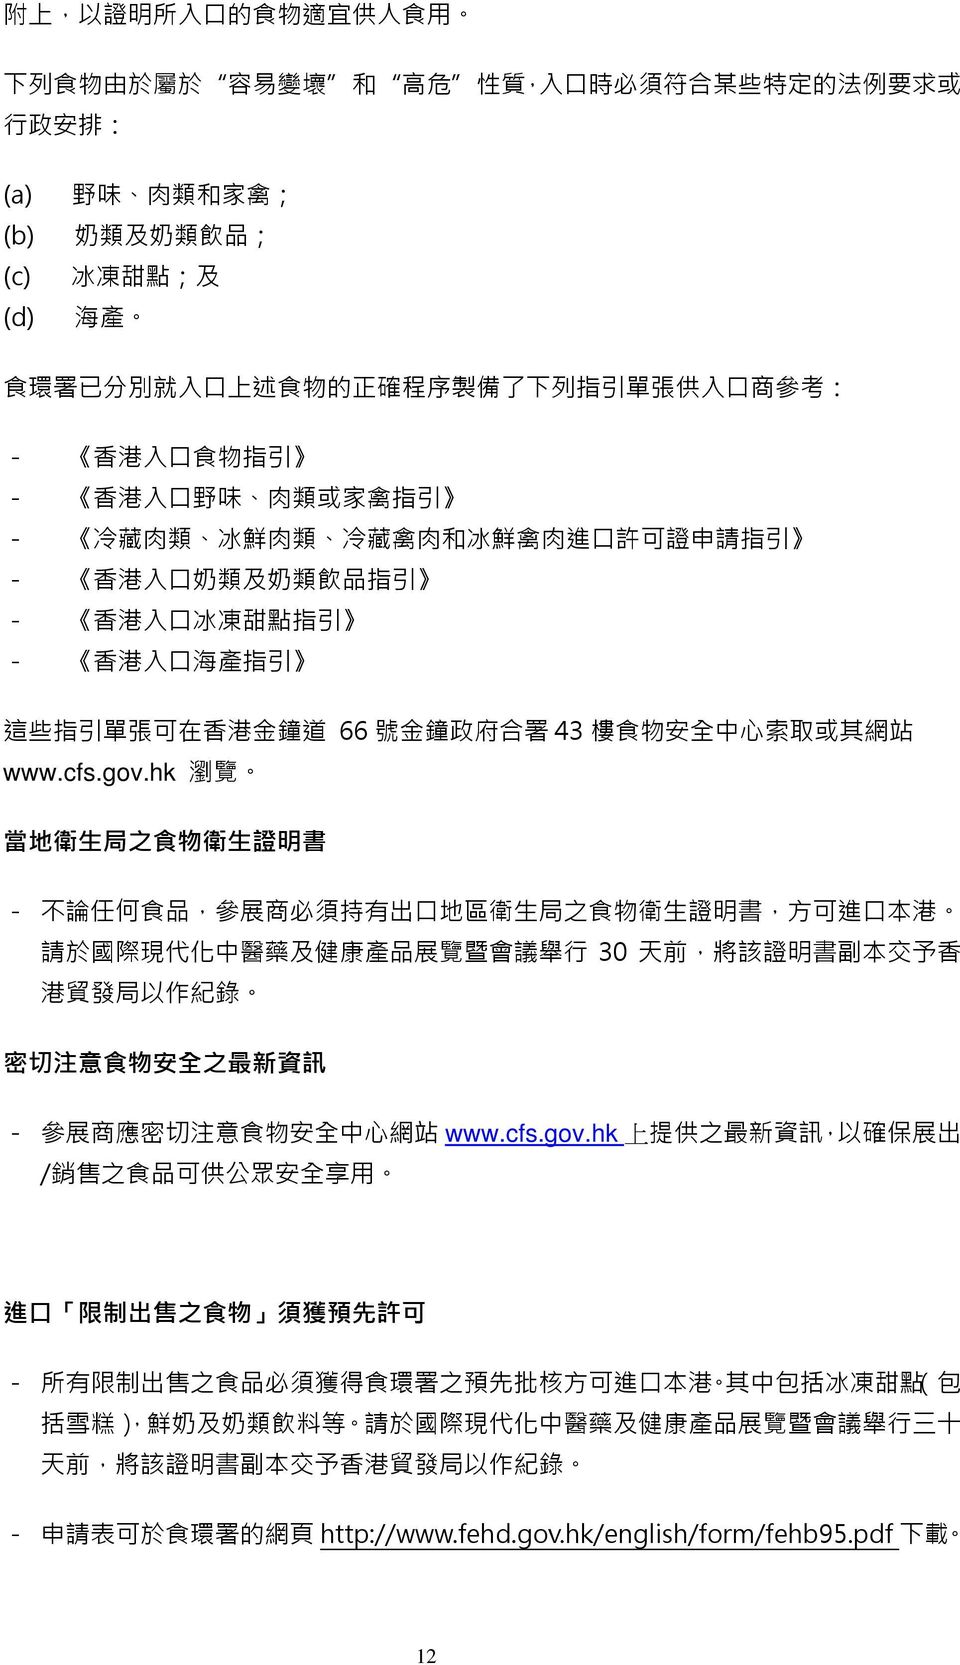 港 入 口 海 產 指 引 這 些 指 引 單 張 可 在 香 港 金 鐘 道 66 號 金 鐘 政 府 合 署 43 樓 食 物 安 全 中 心 索 取 或 其 網 站 www.cfs.gov.